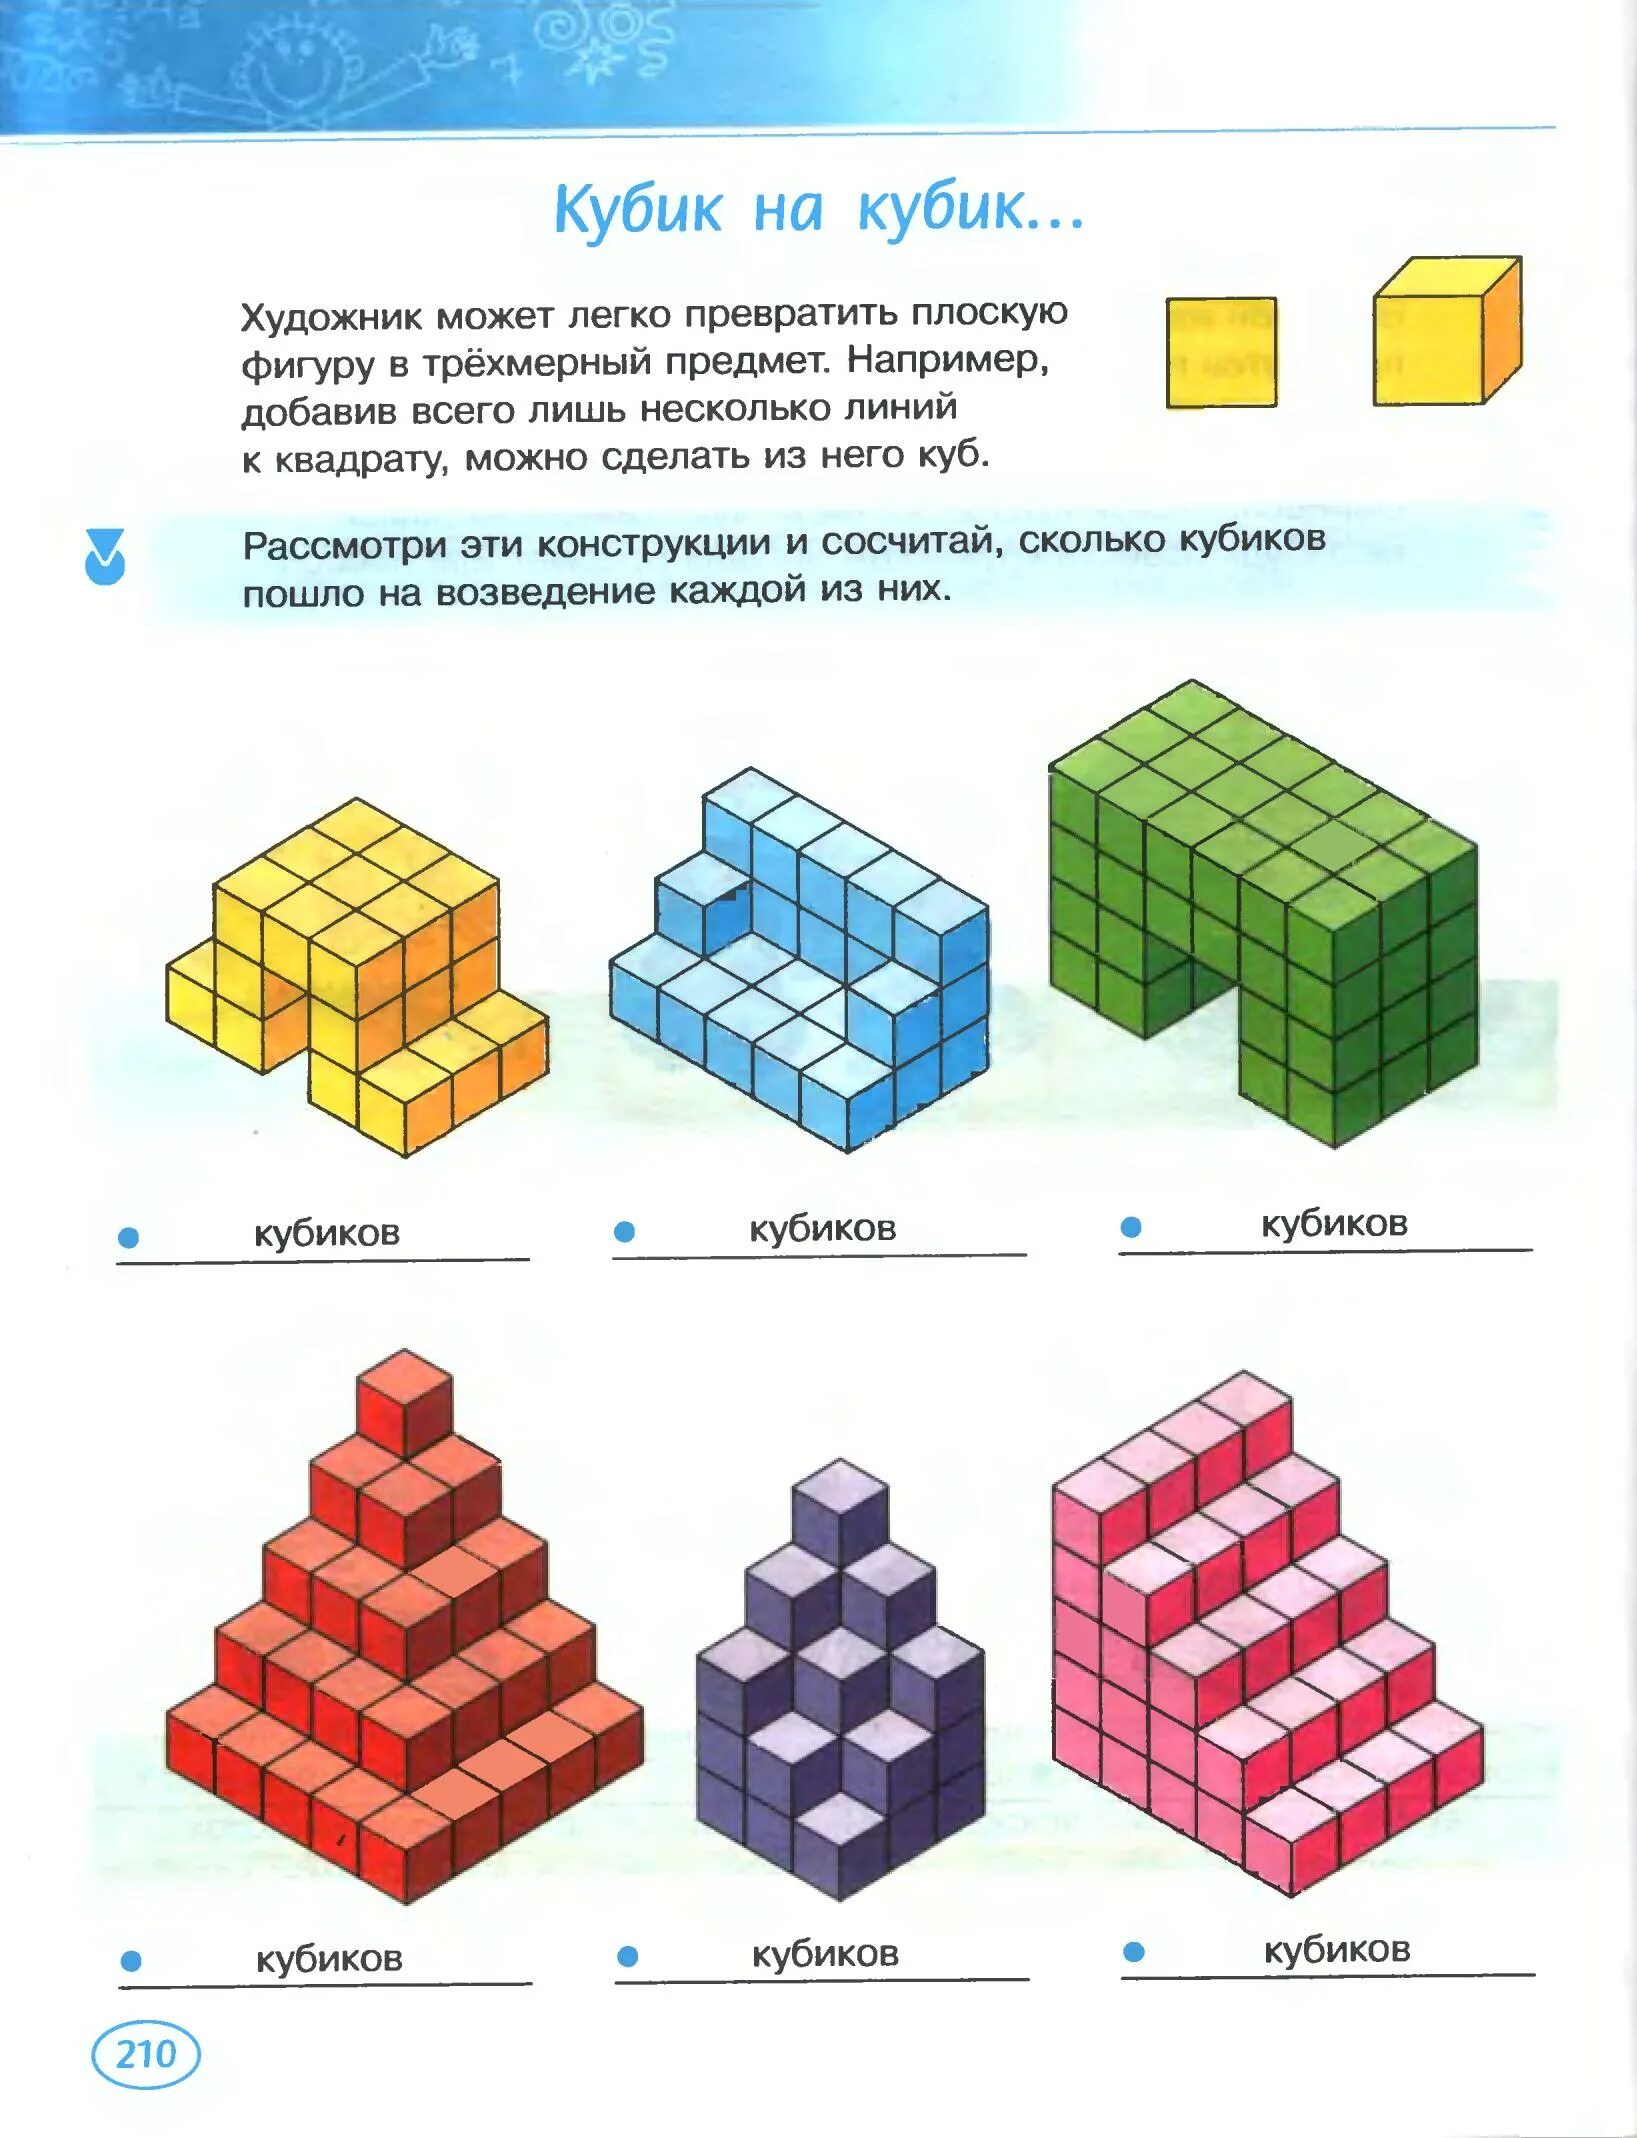 Сколько кубиков игра. Фигуры из кубиков. Сосчитай кубики в фигуре. Посчитай количество кубиков. Объемные фигуры из кубиков.